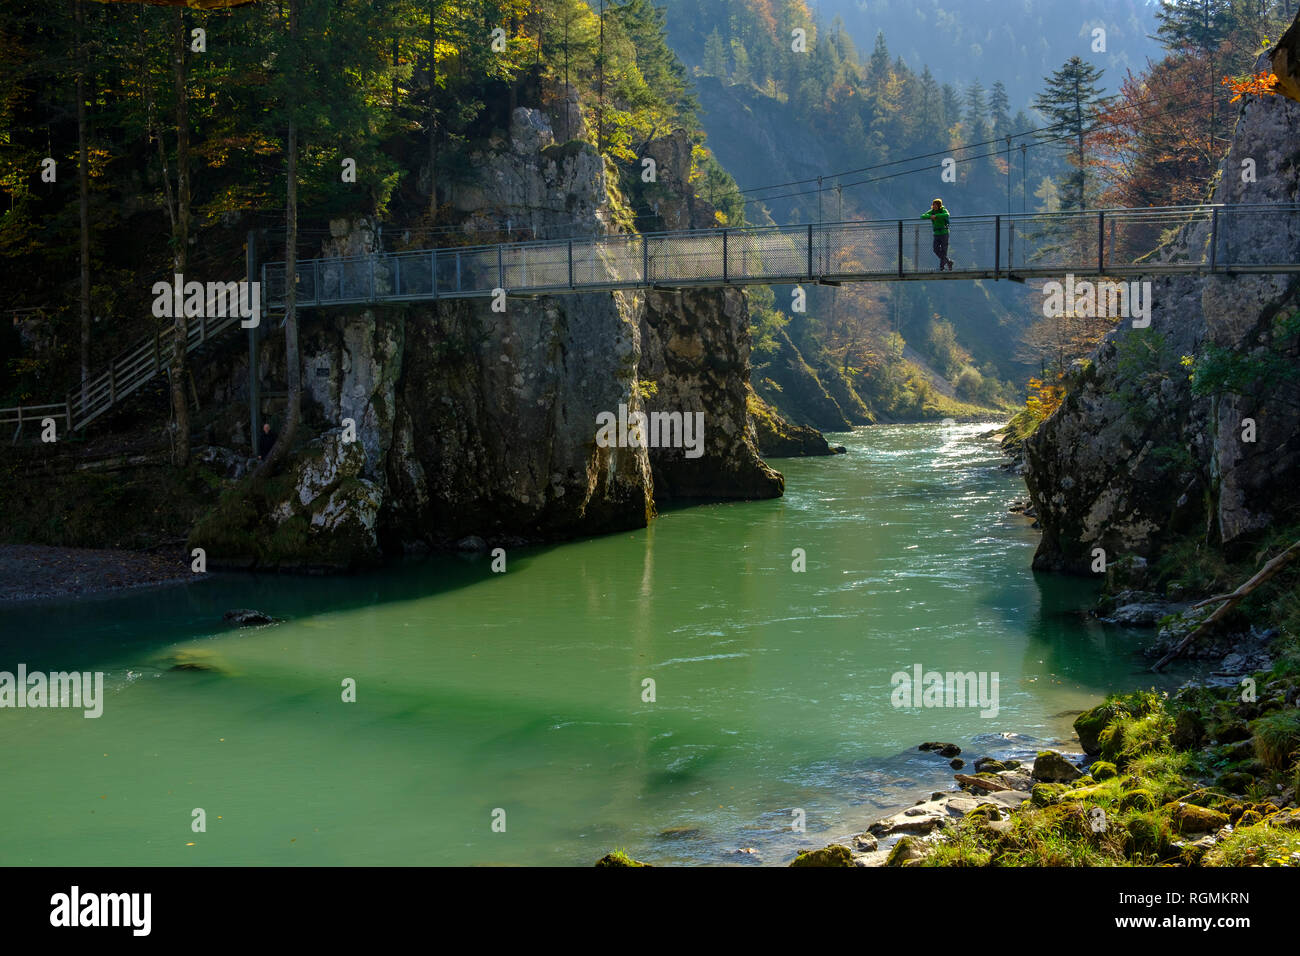 Autriche, Tyrol, randonneur sur pont suspendu à la Tiroler Ache en automne à Banque D'Images